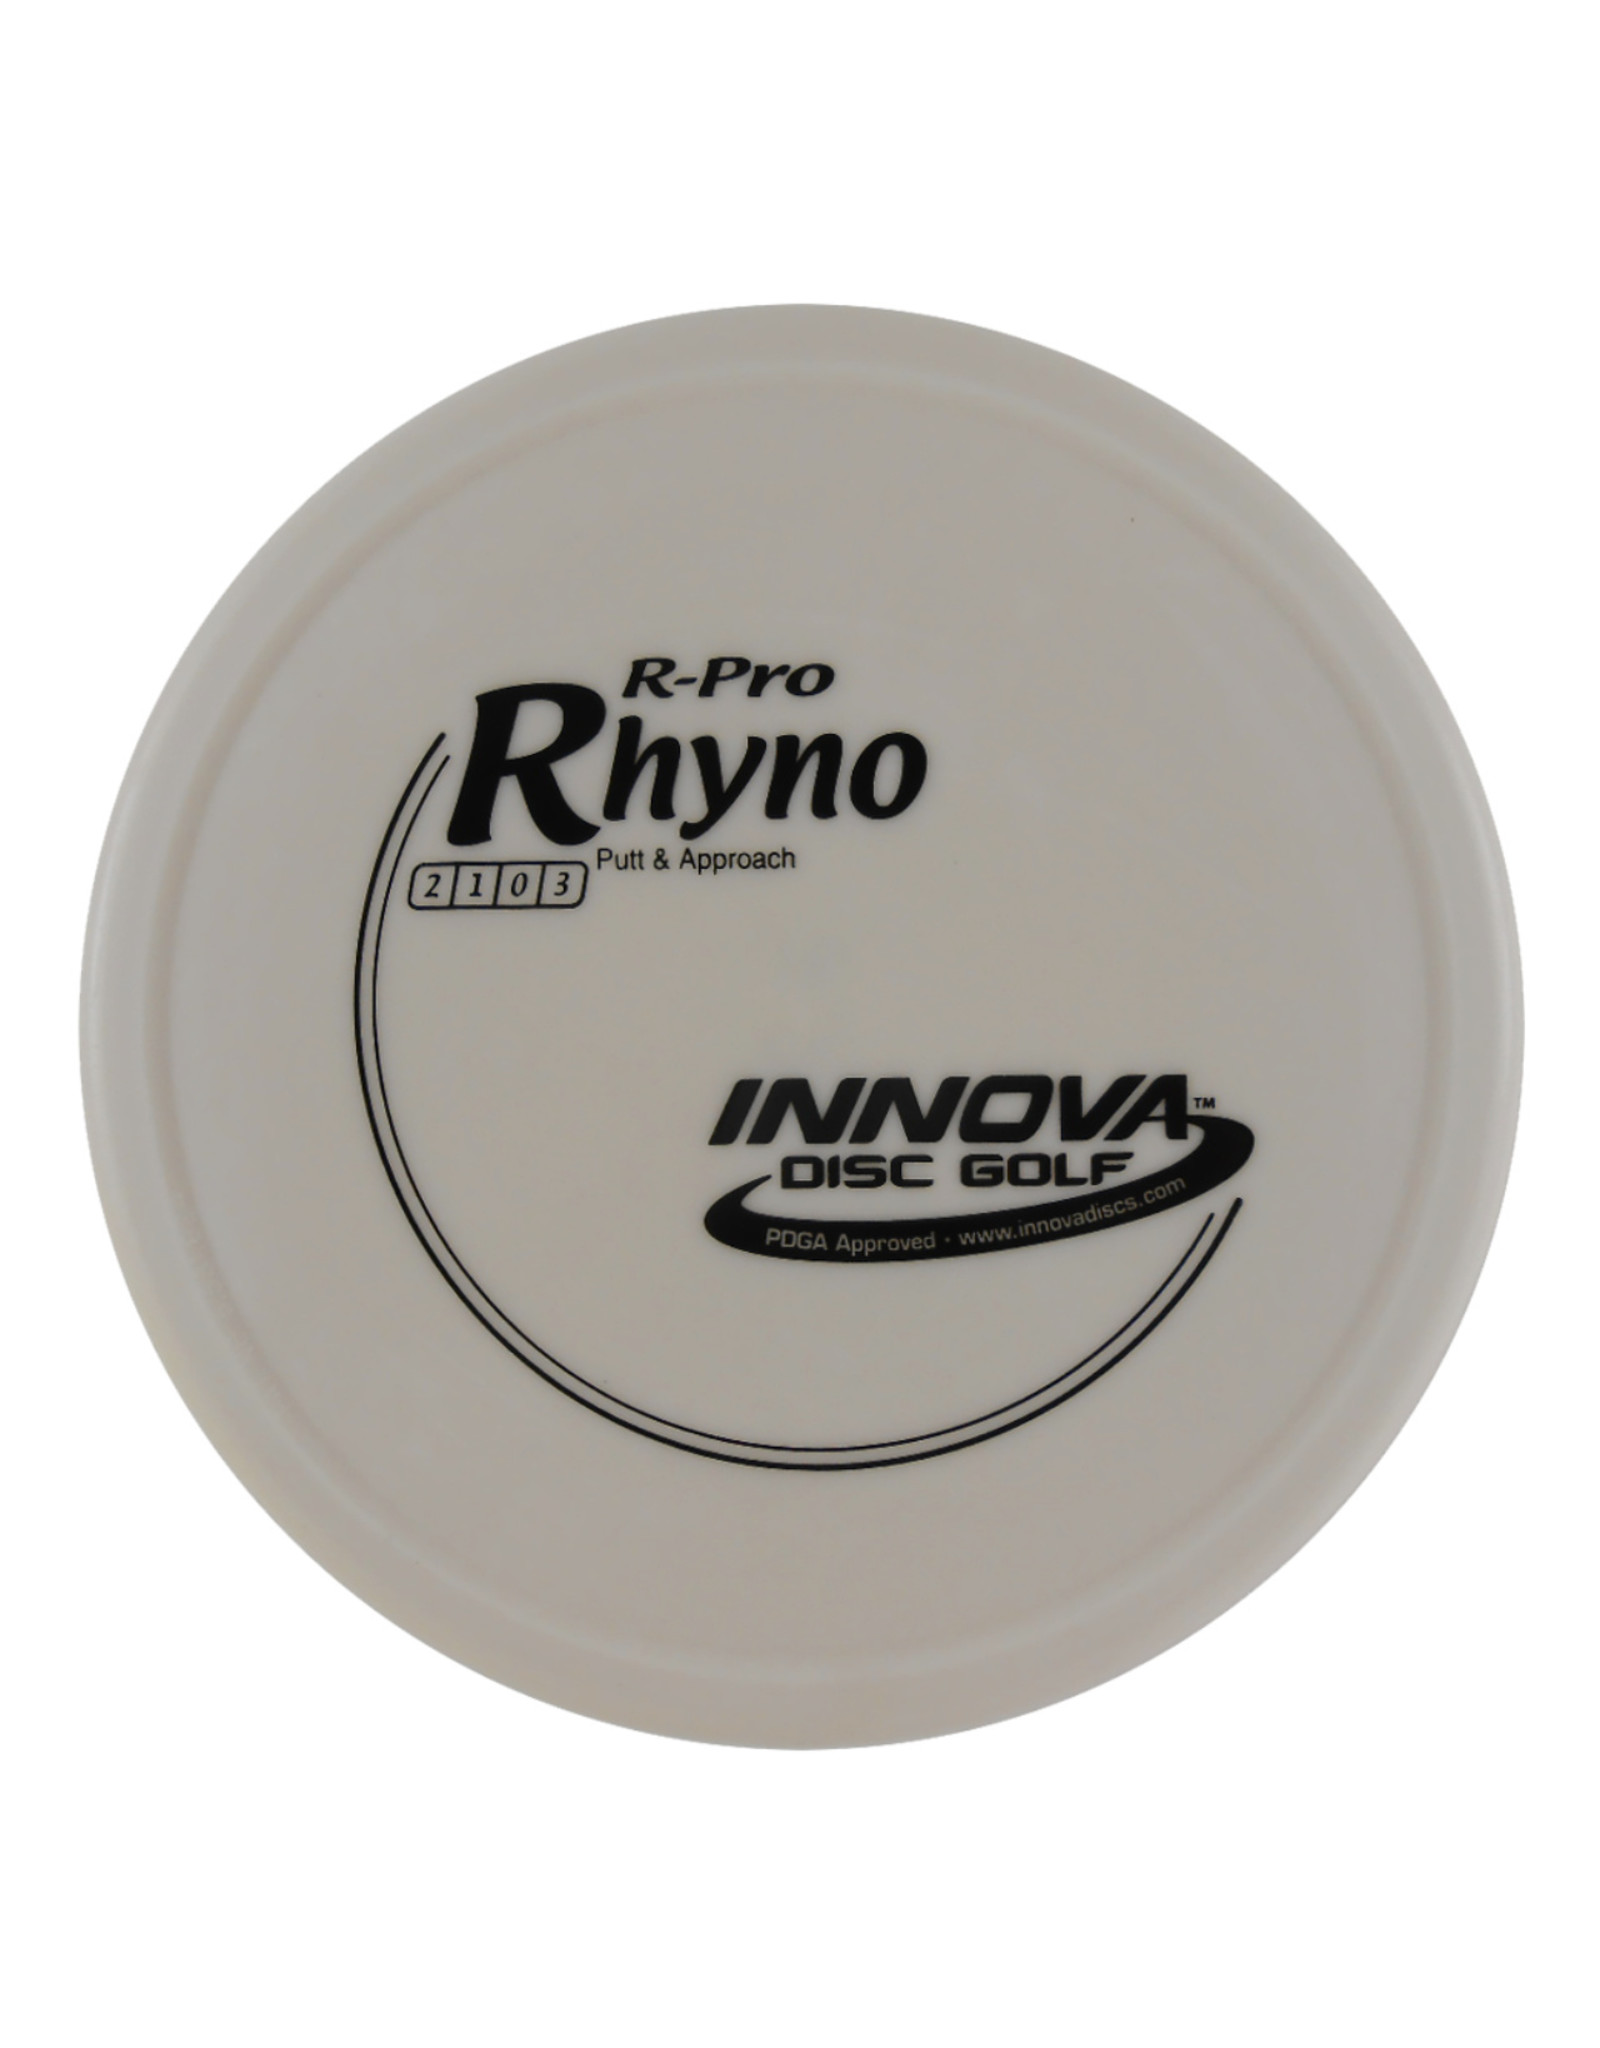 Innova Disc Golf Innova R-Pro Rhyno Putt & Approach